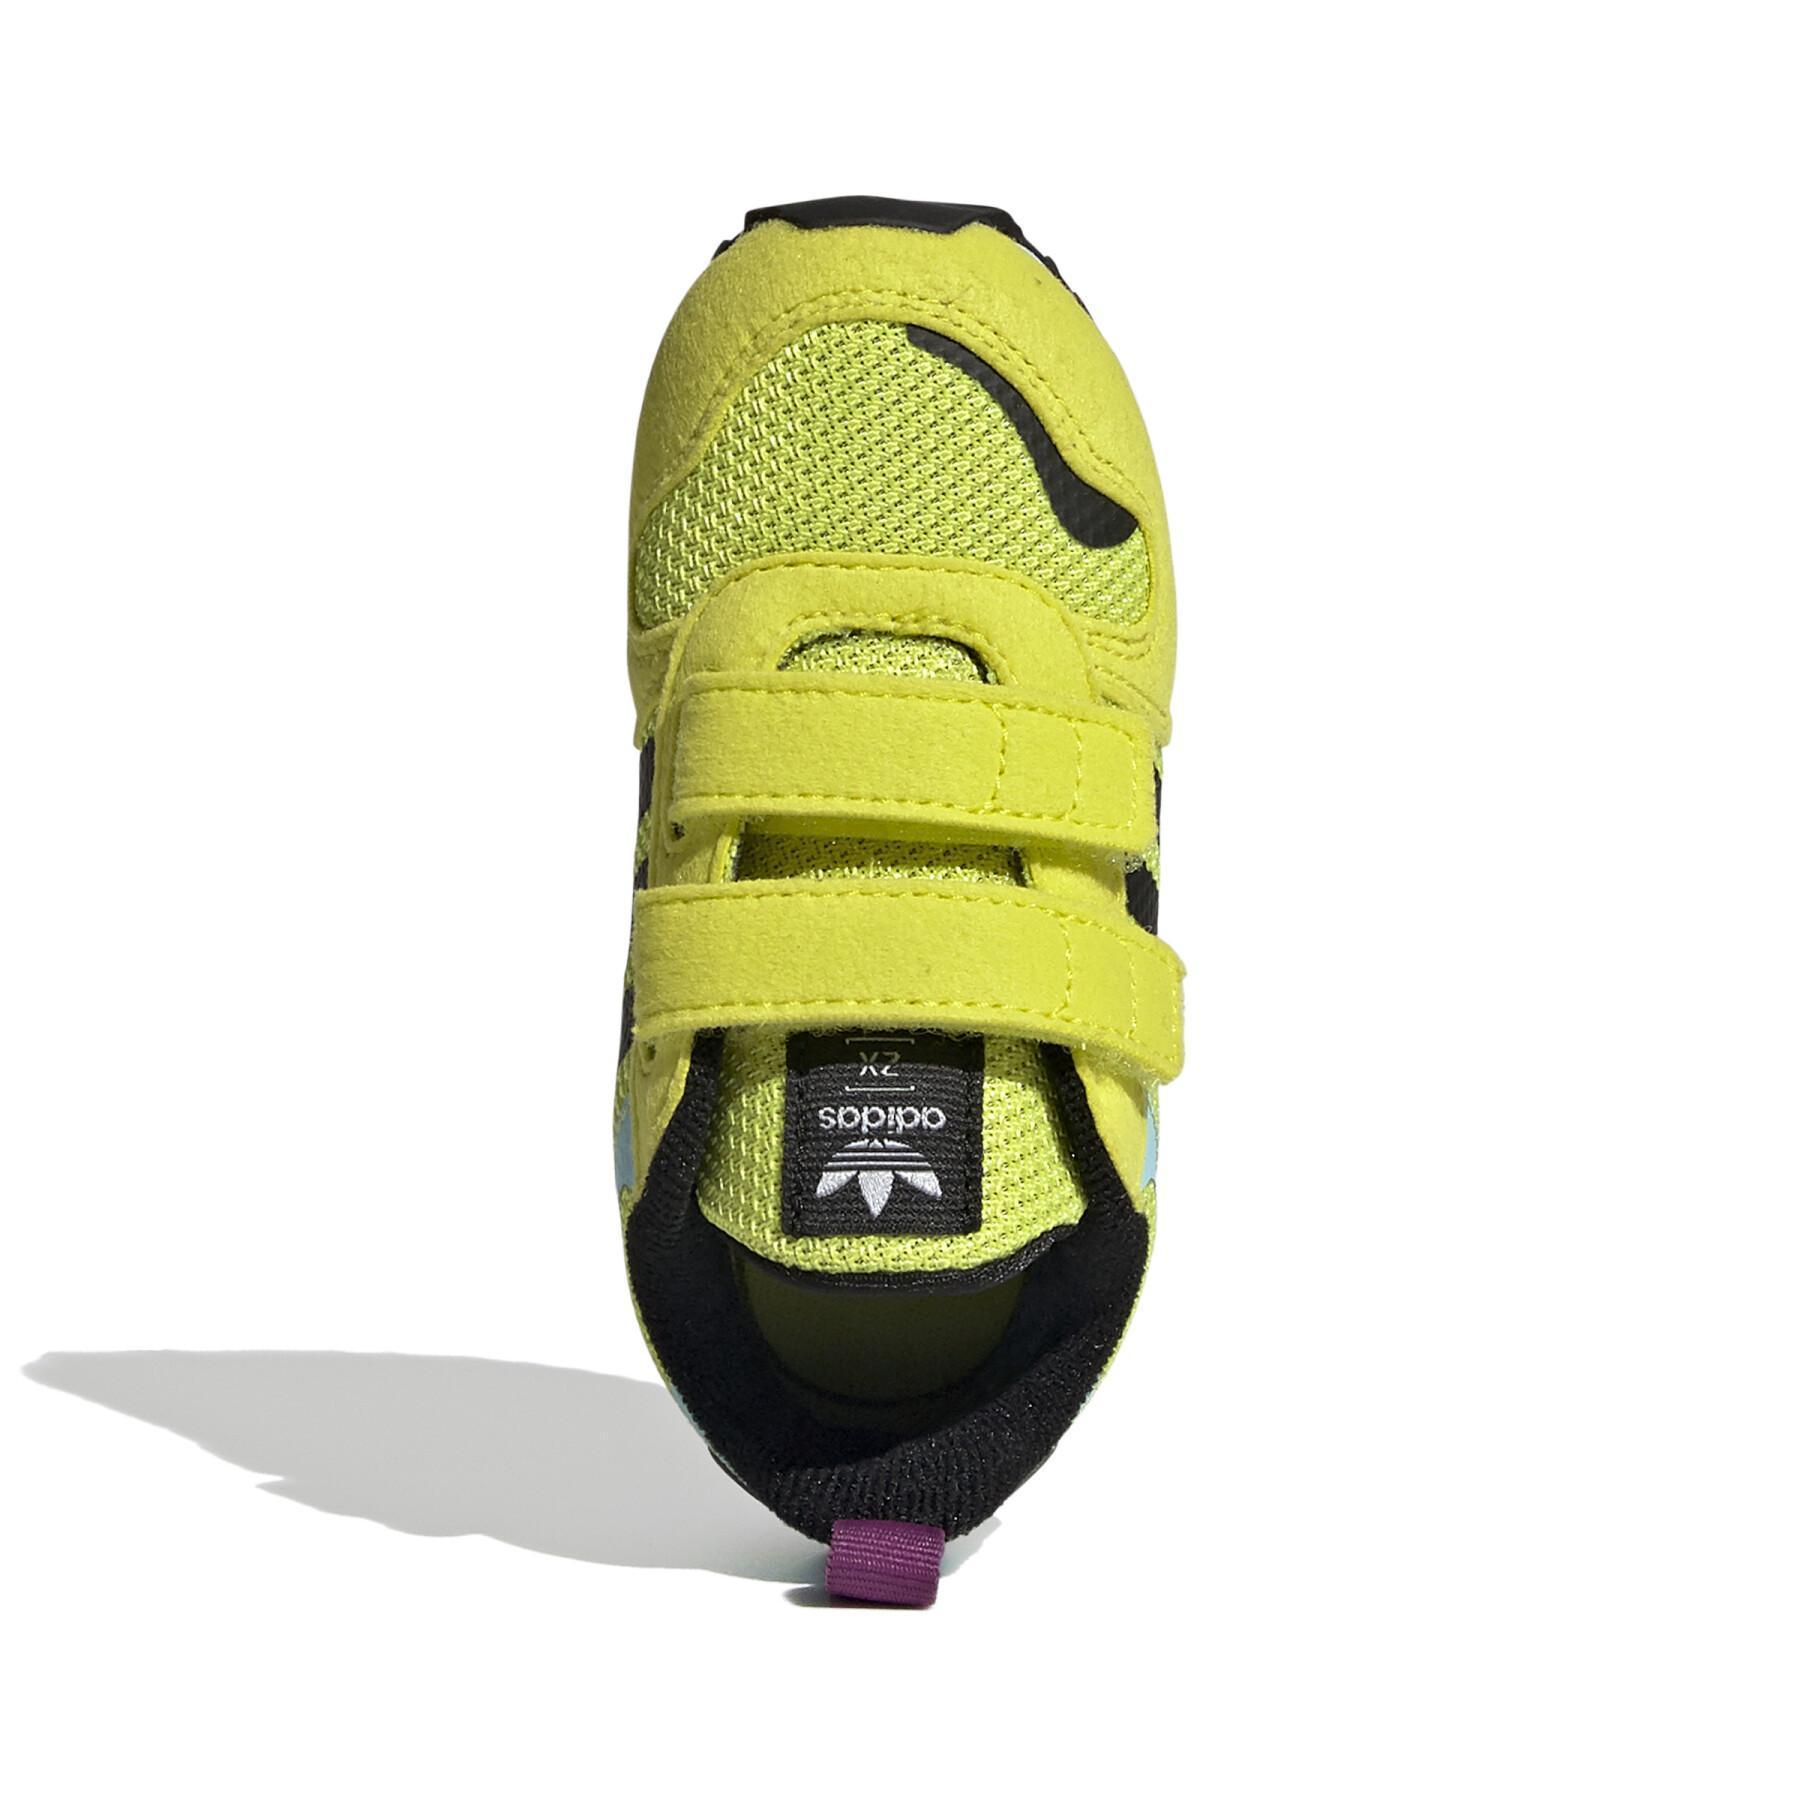 Children's sneakers adidas Originals ZX 700 HD